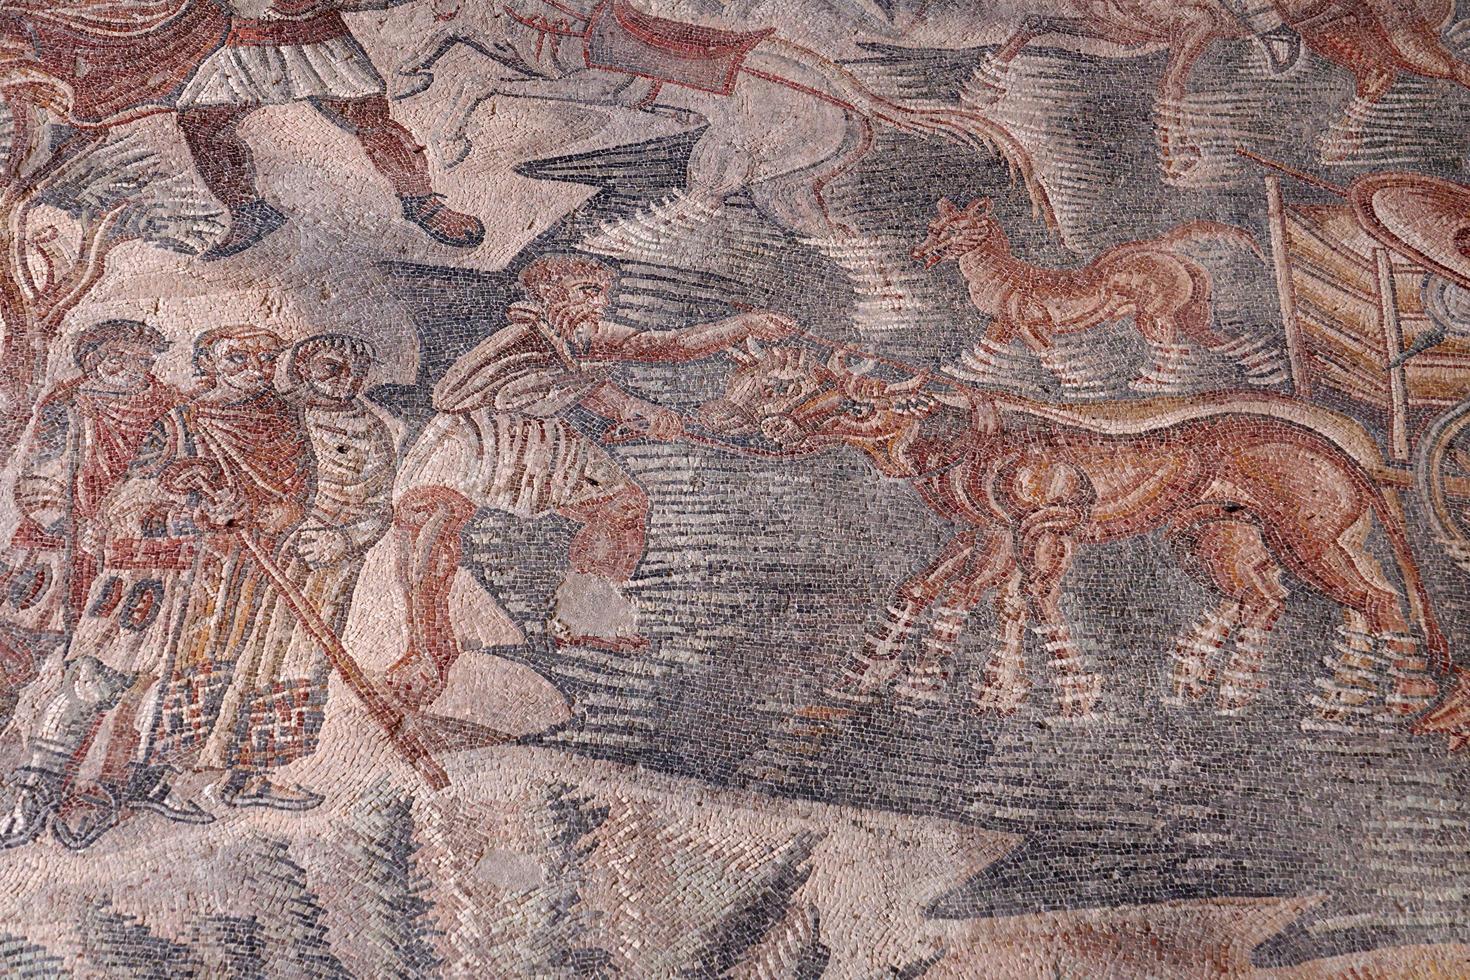 villa del tellaro sicilia gratuito iscrizione mosaico romano foto